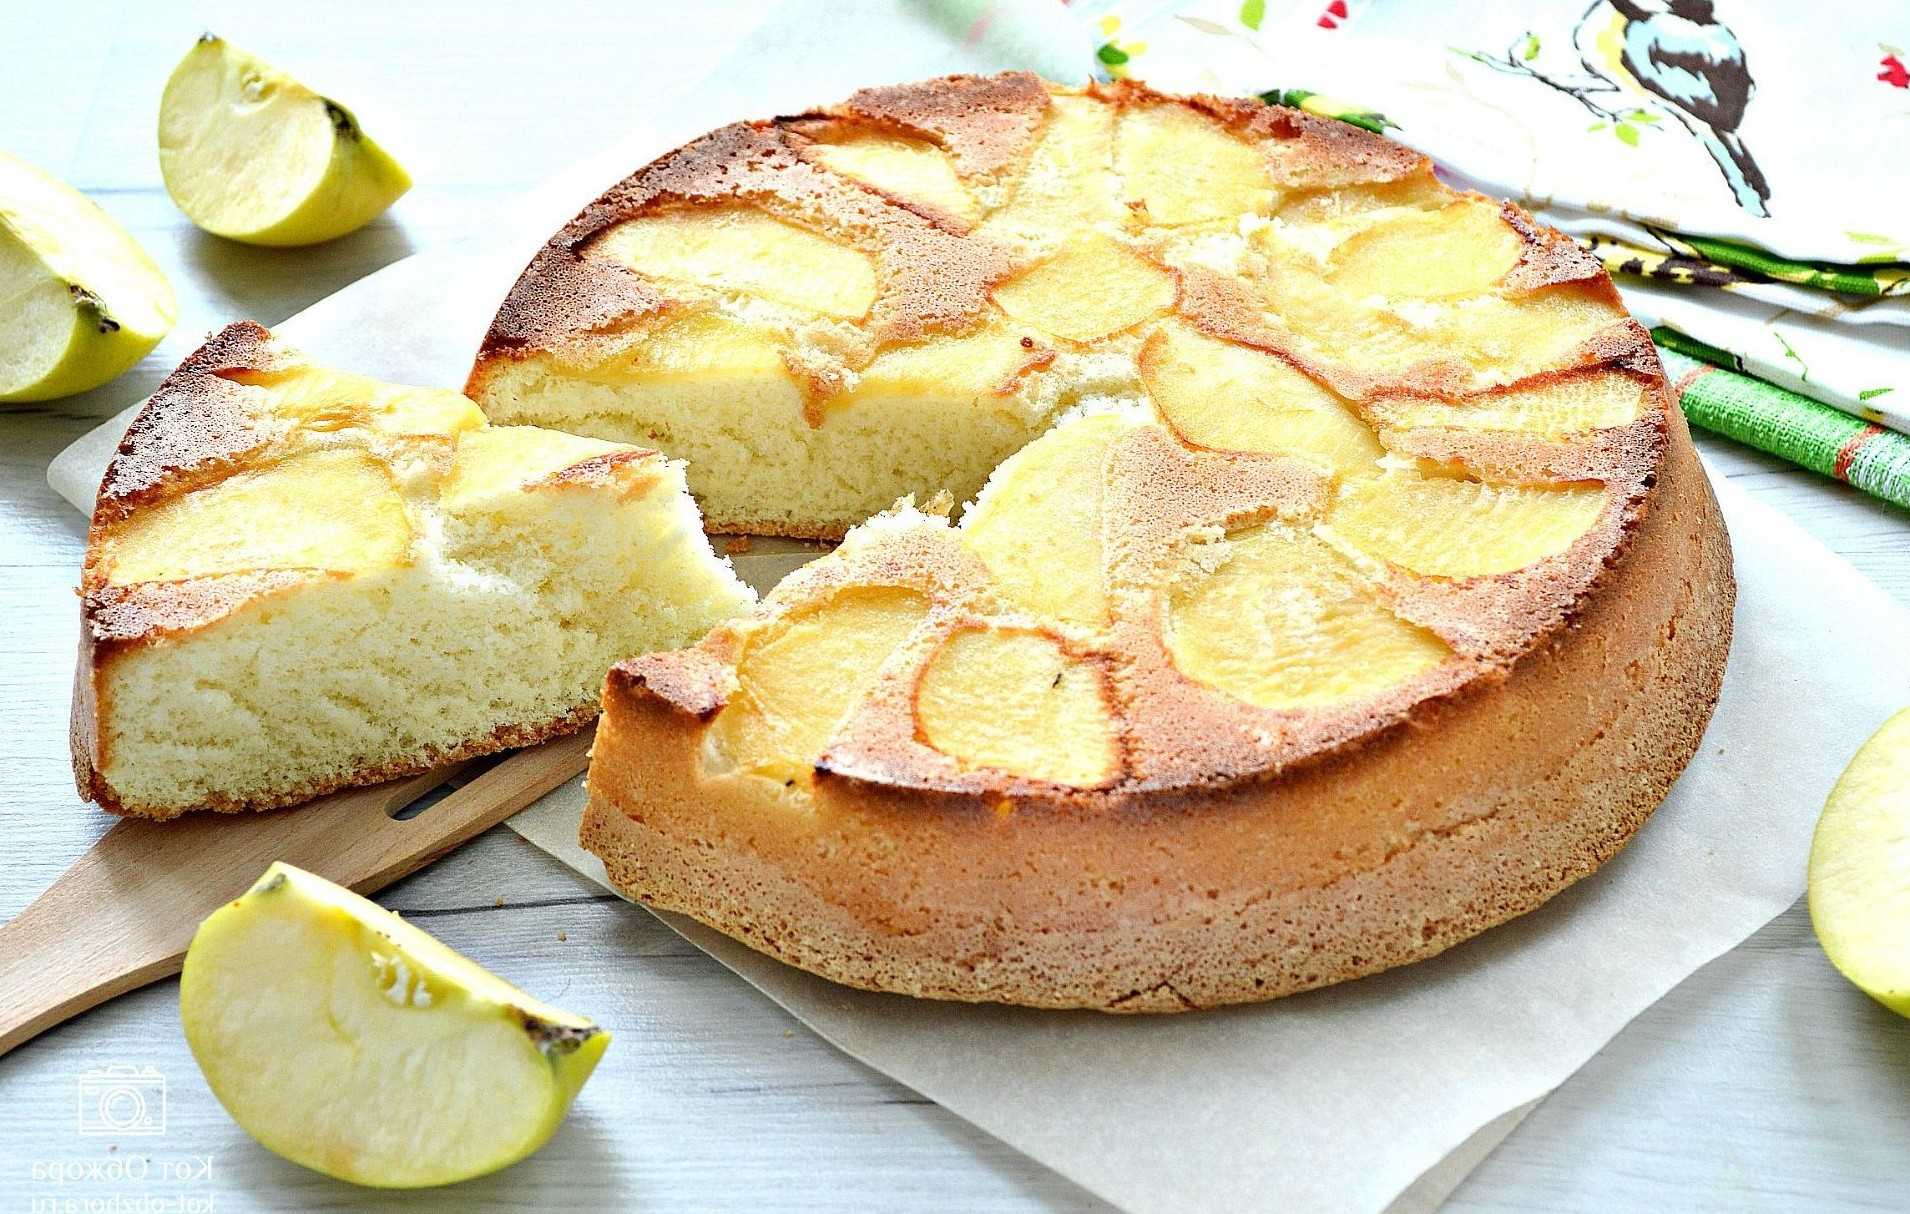 Яблочный пирог с медом: пошаговый рецепт быстро и просто от марины выходцевой